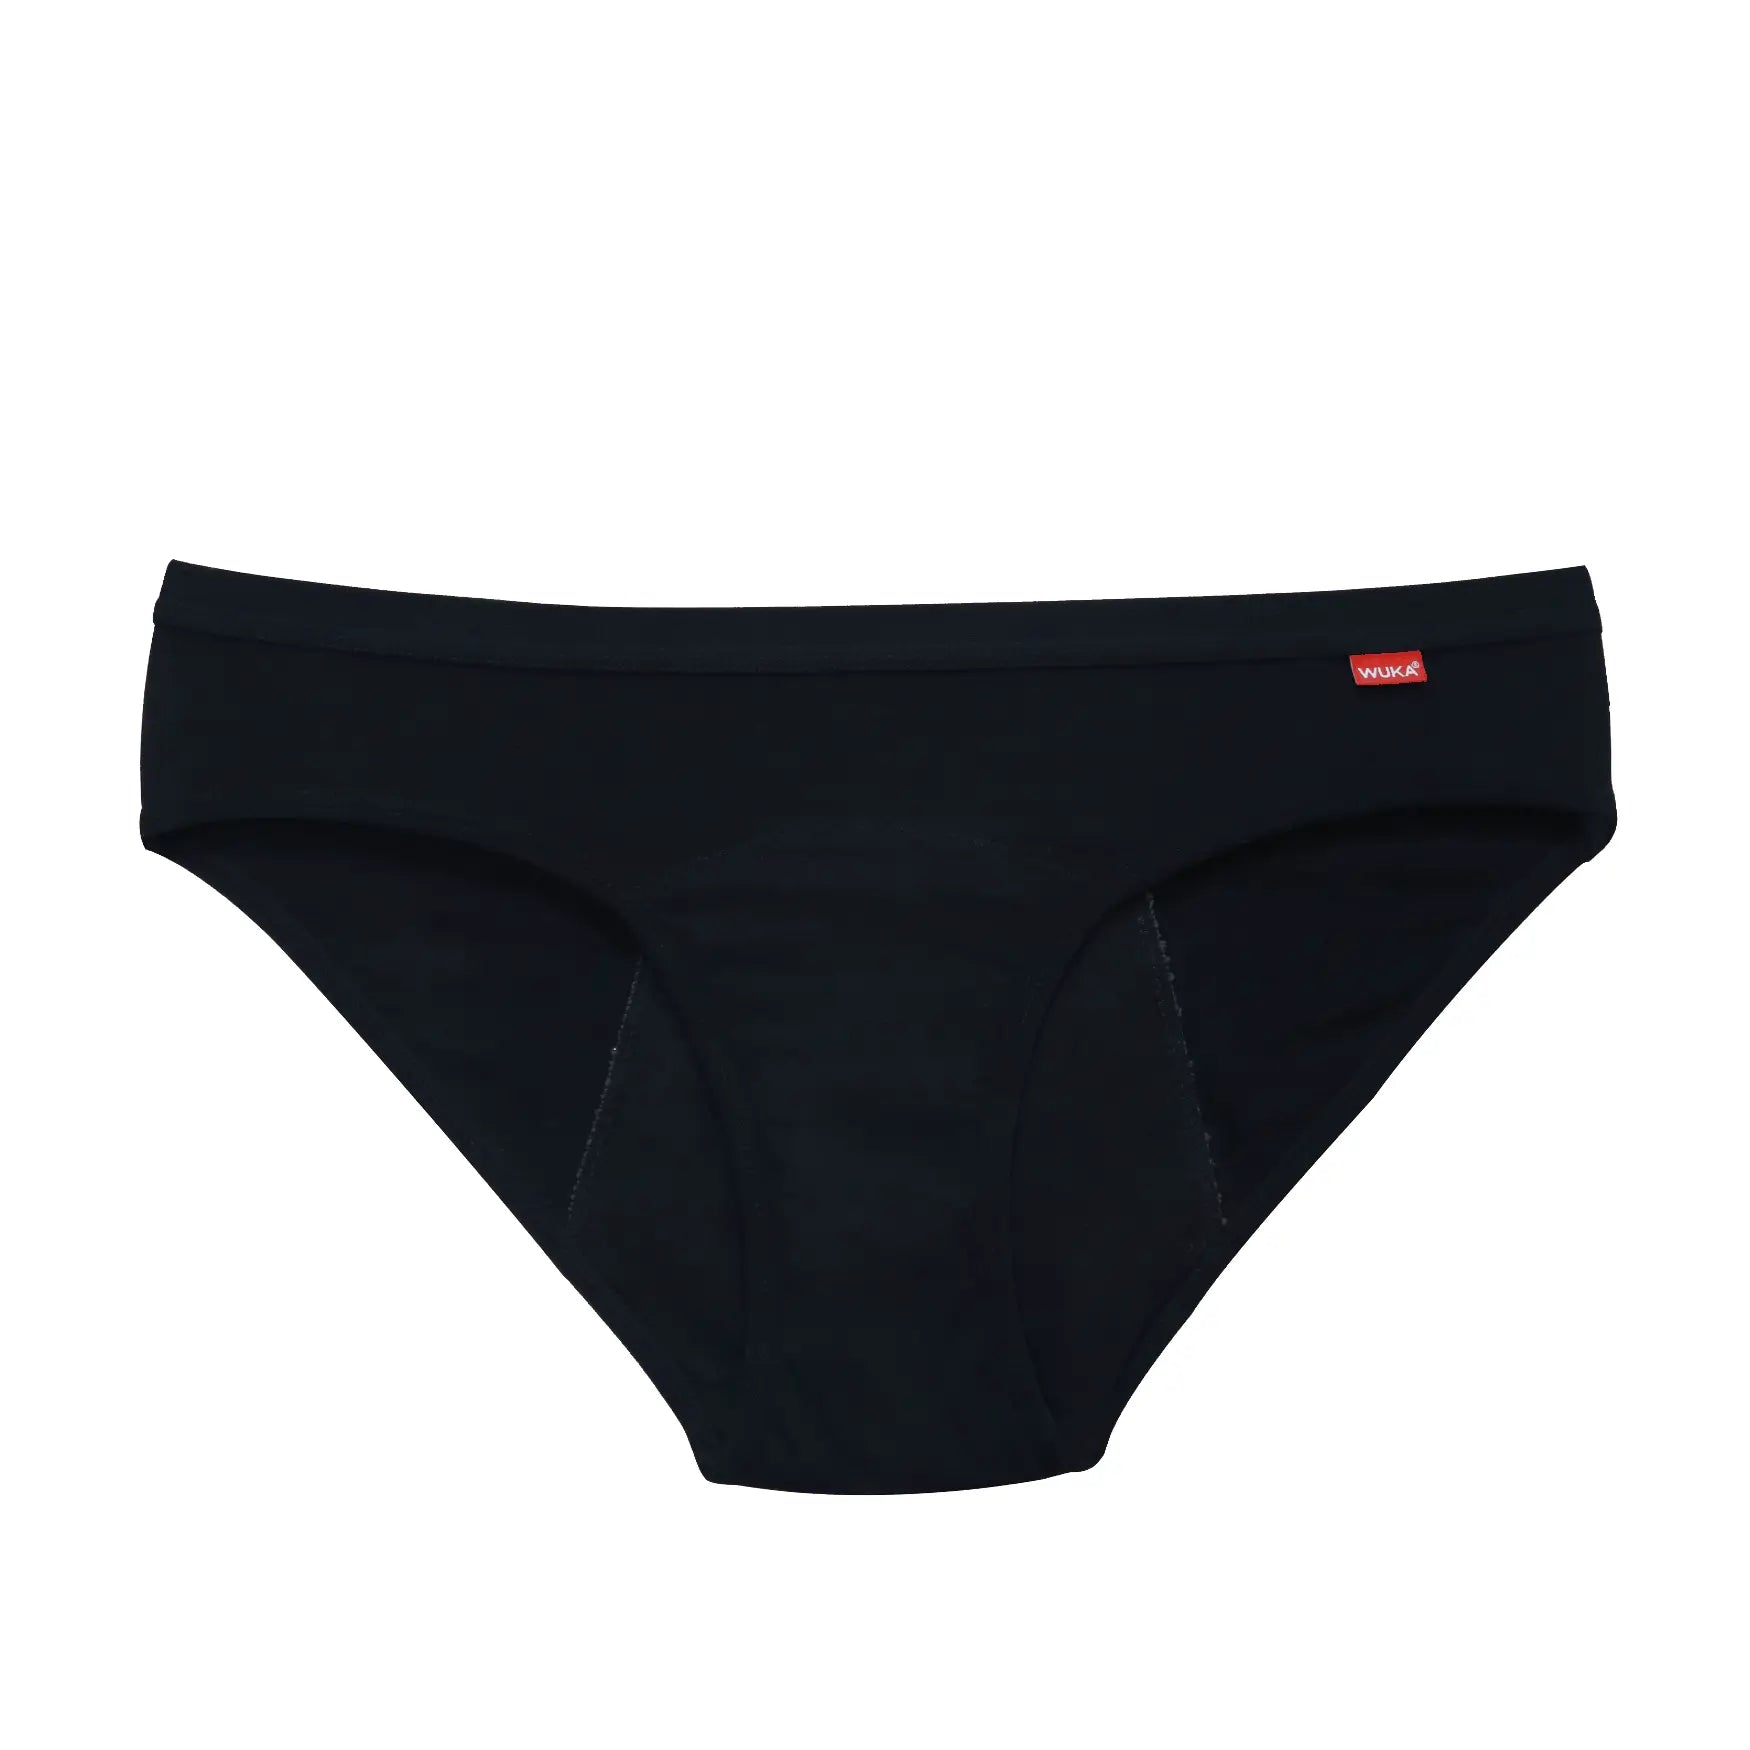 Bench Seamless Panty (Medium - Black / Nude)